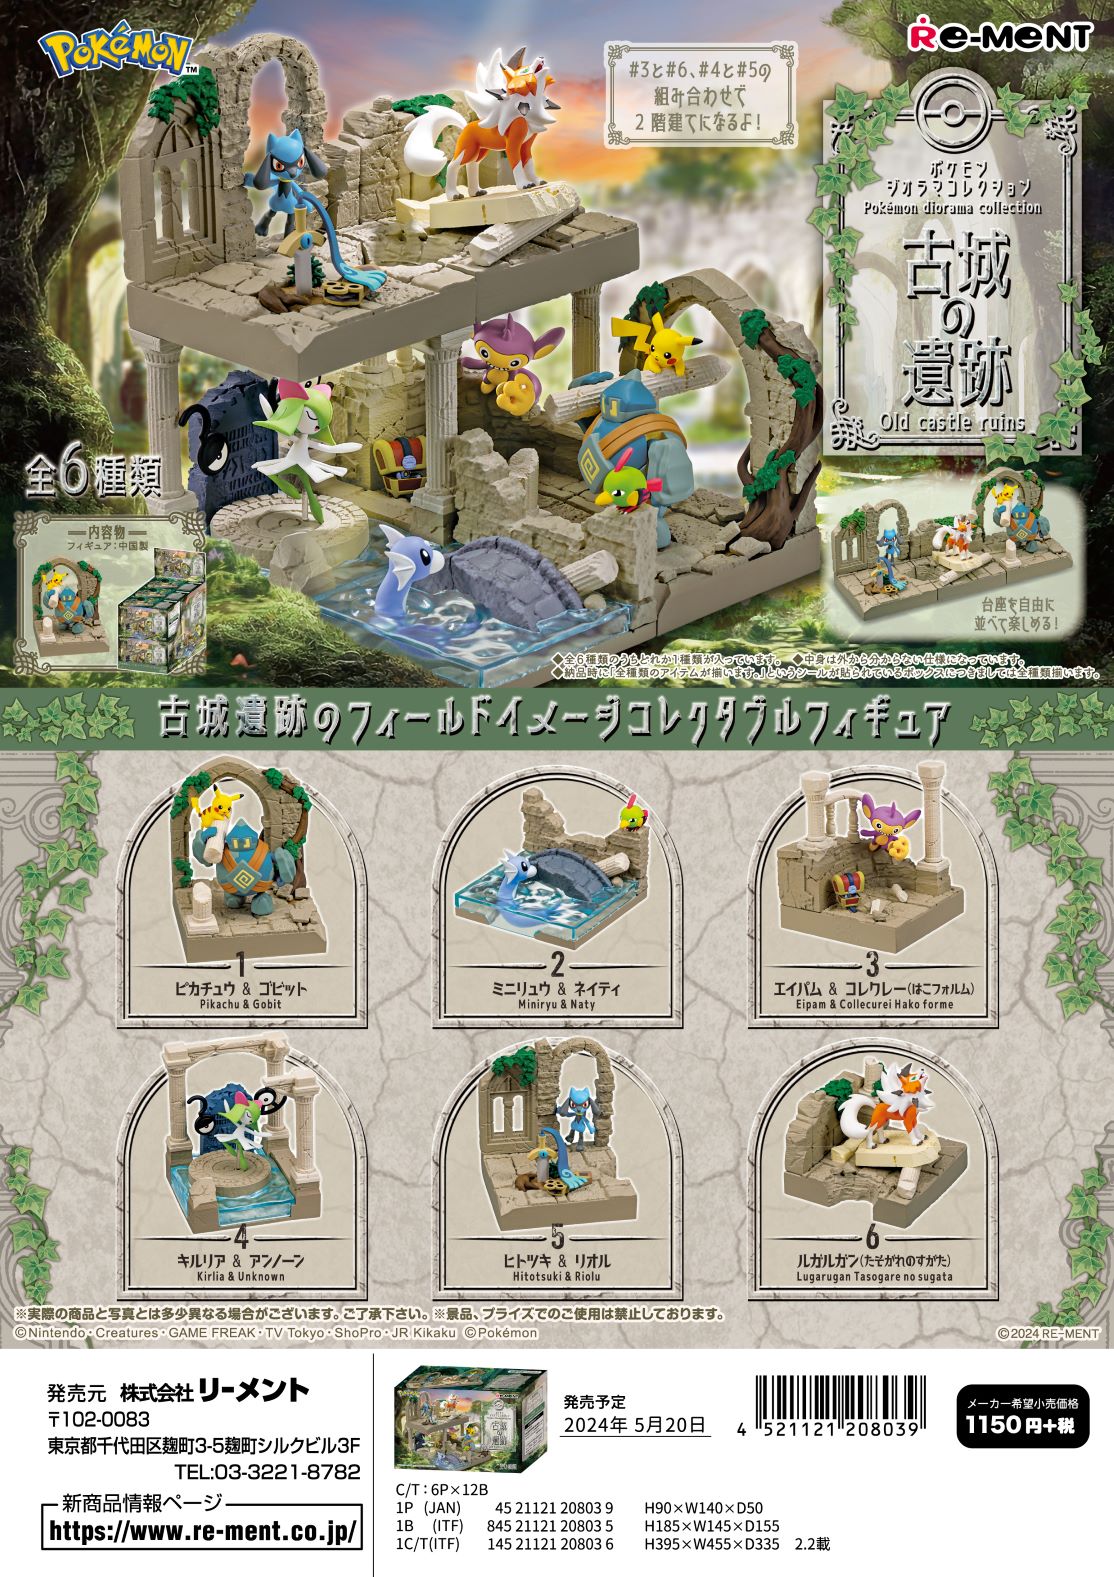 (予約)6月17日発売 リーメント ポケモン ポケモンジオラマコレクション 古城の遺跡 全6種 1BOXでダブらず揃います